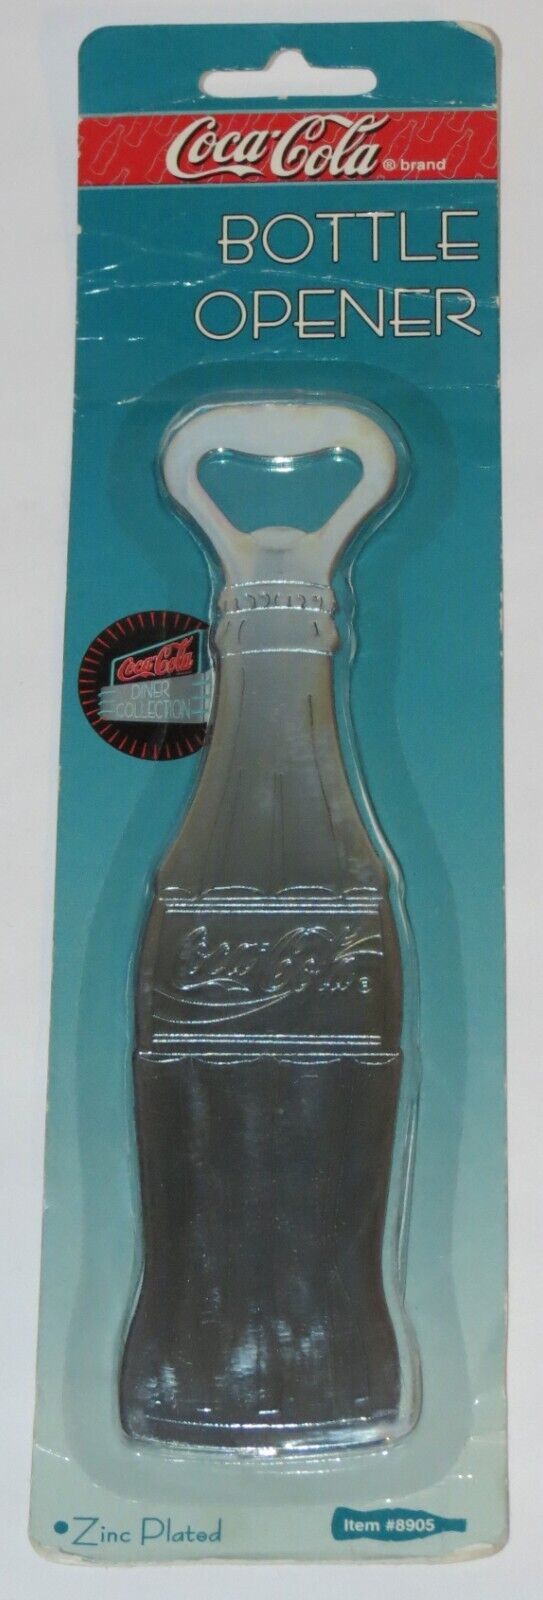 1995 Coca-Cola Zinc Plated Bottle Opener- NOS! - $12.82